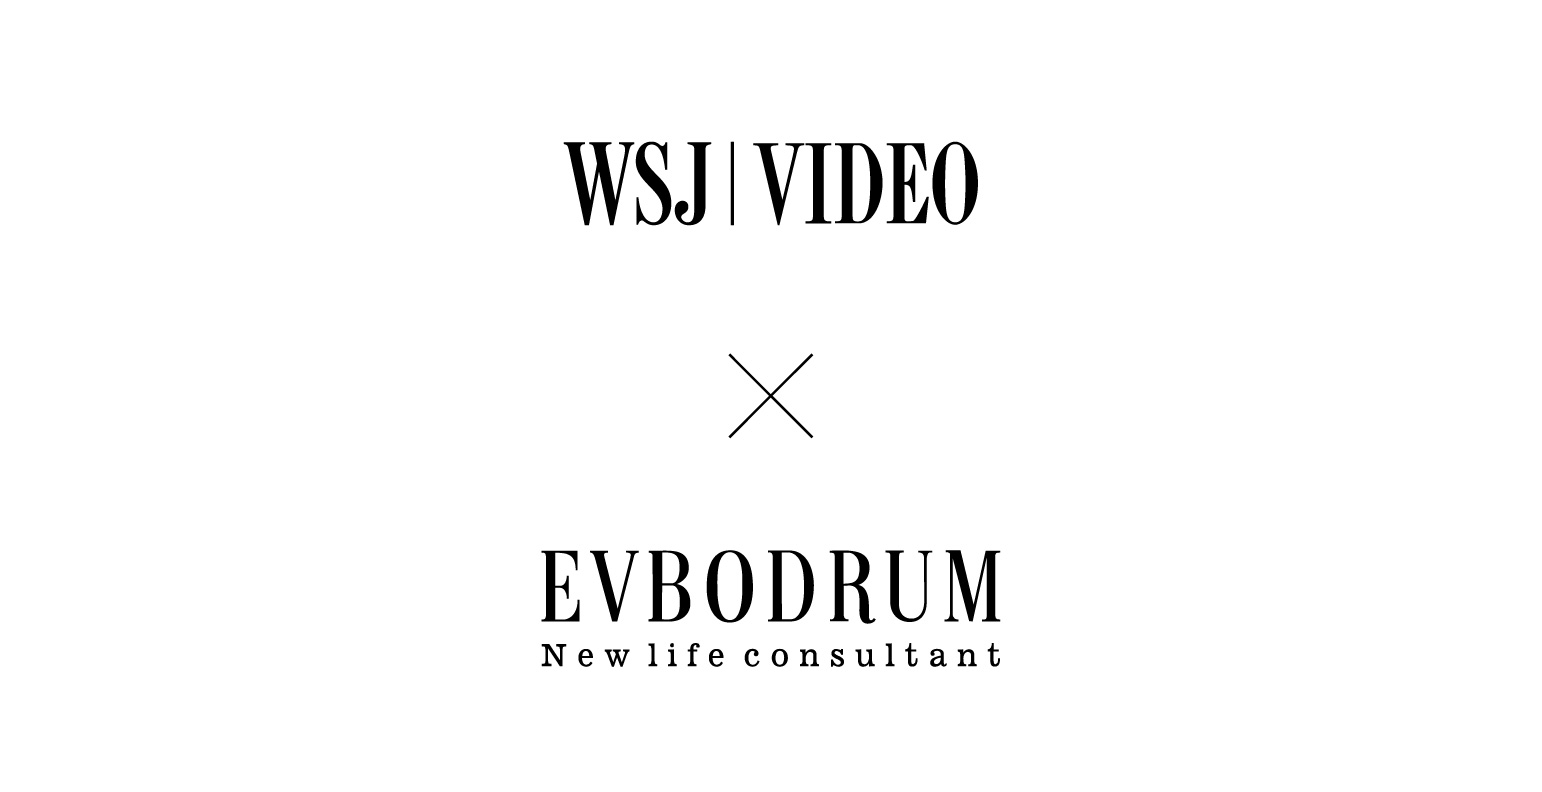 EVBodrum in WSJ | Video '20